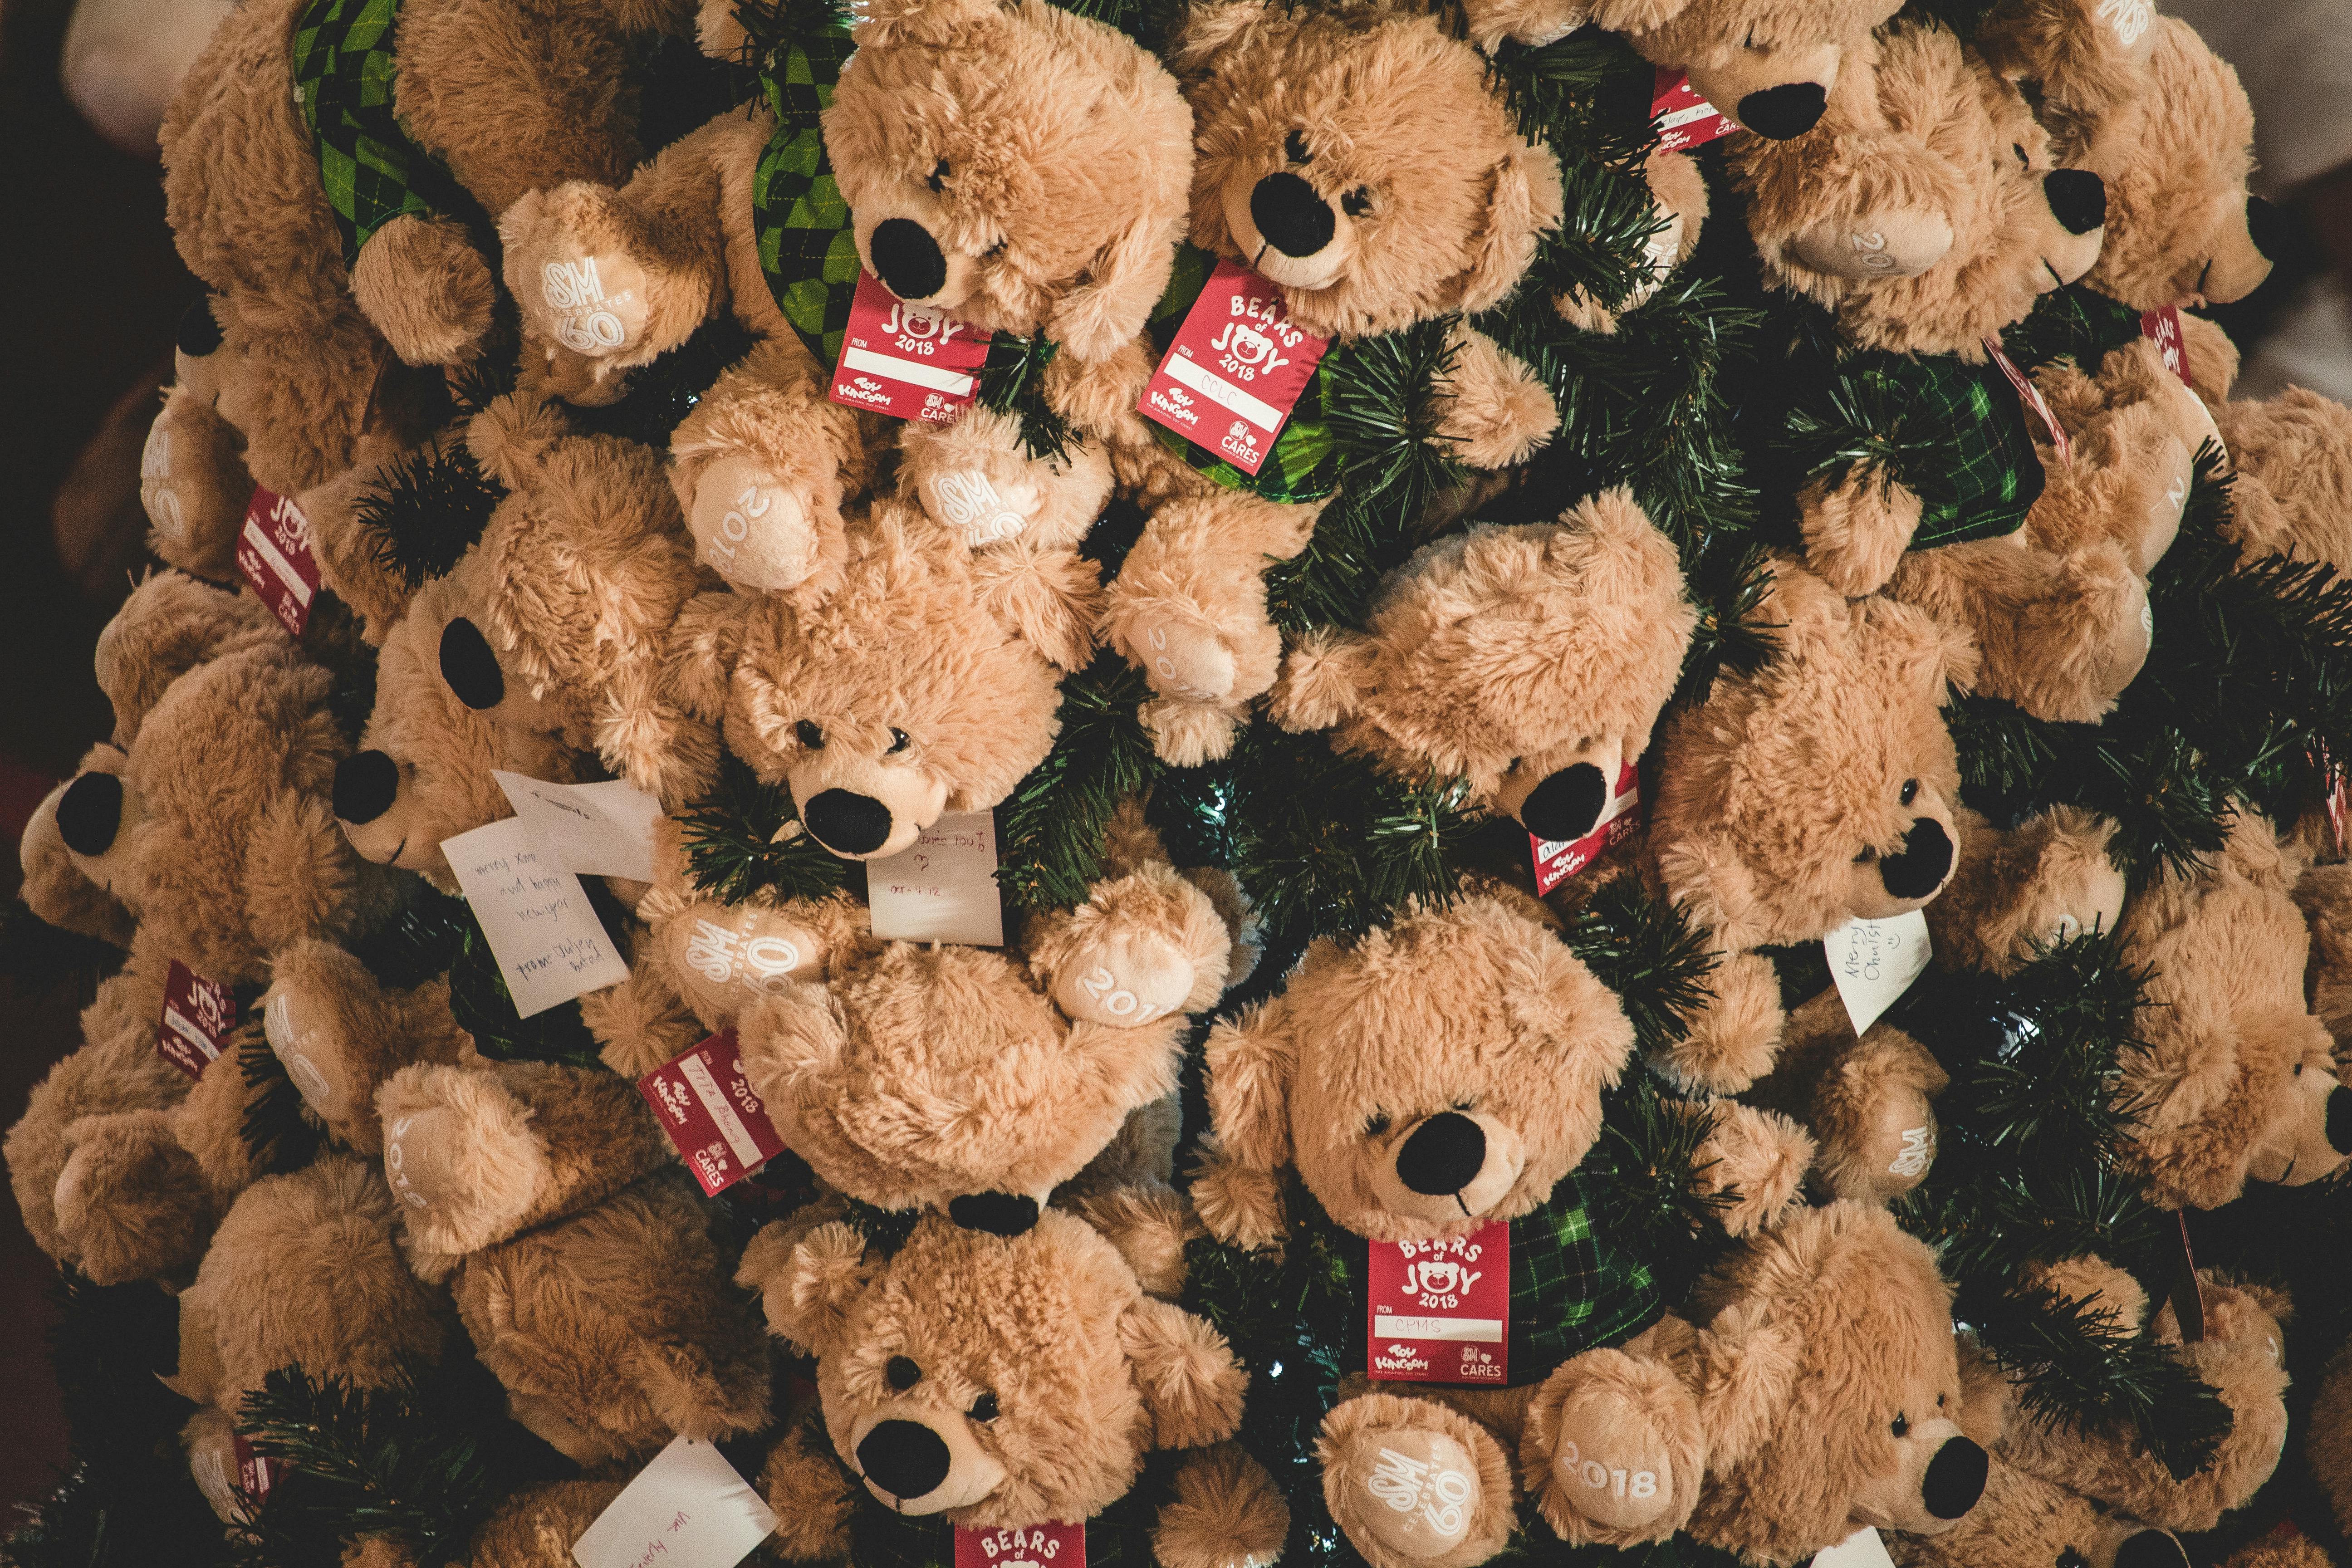 a lot of teddy bears